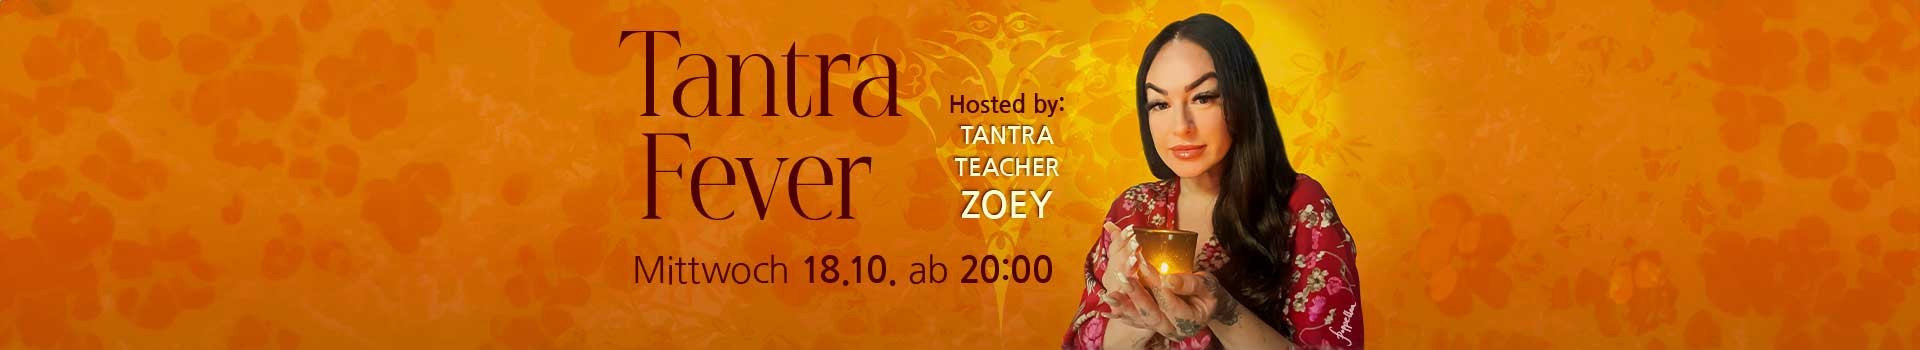 Tantra Fever